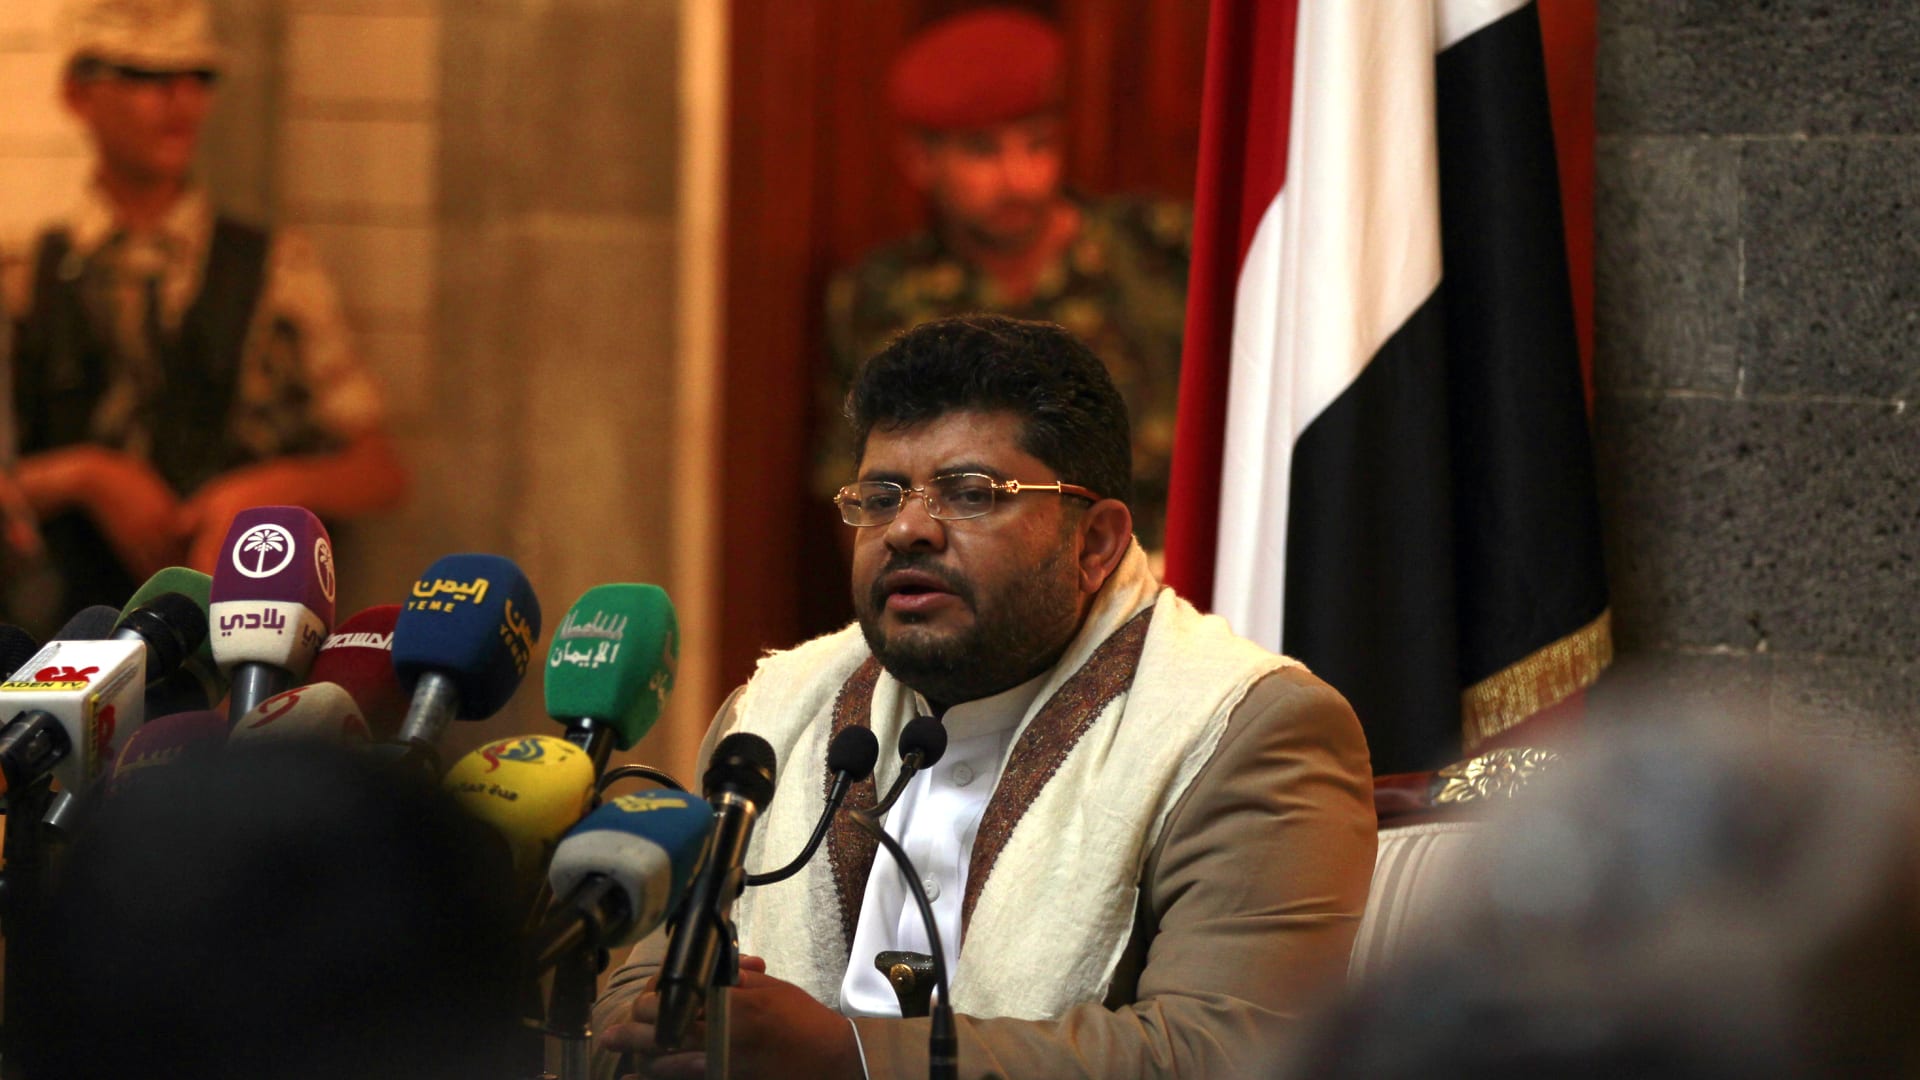 "هذه الحرب يجب أن تنتهي": شاهد إعلان بايدن حول اليمن